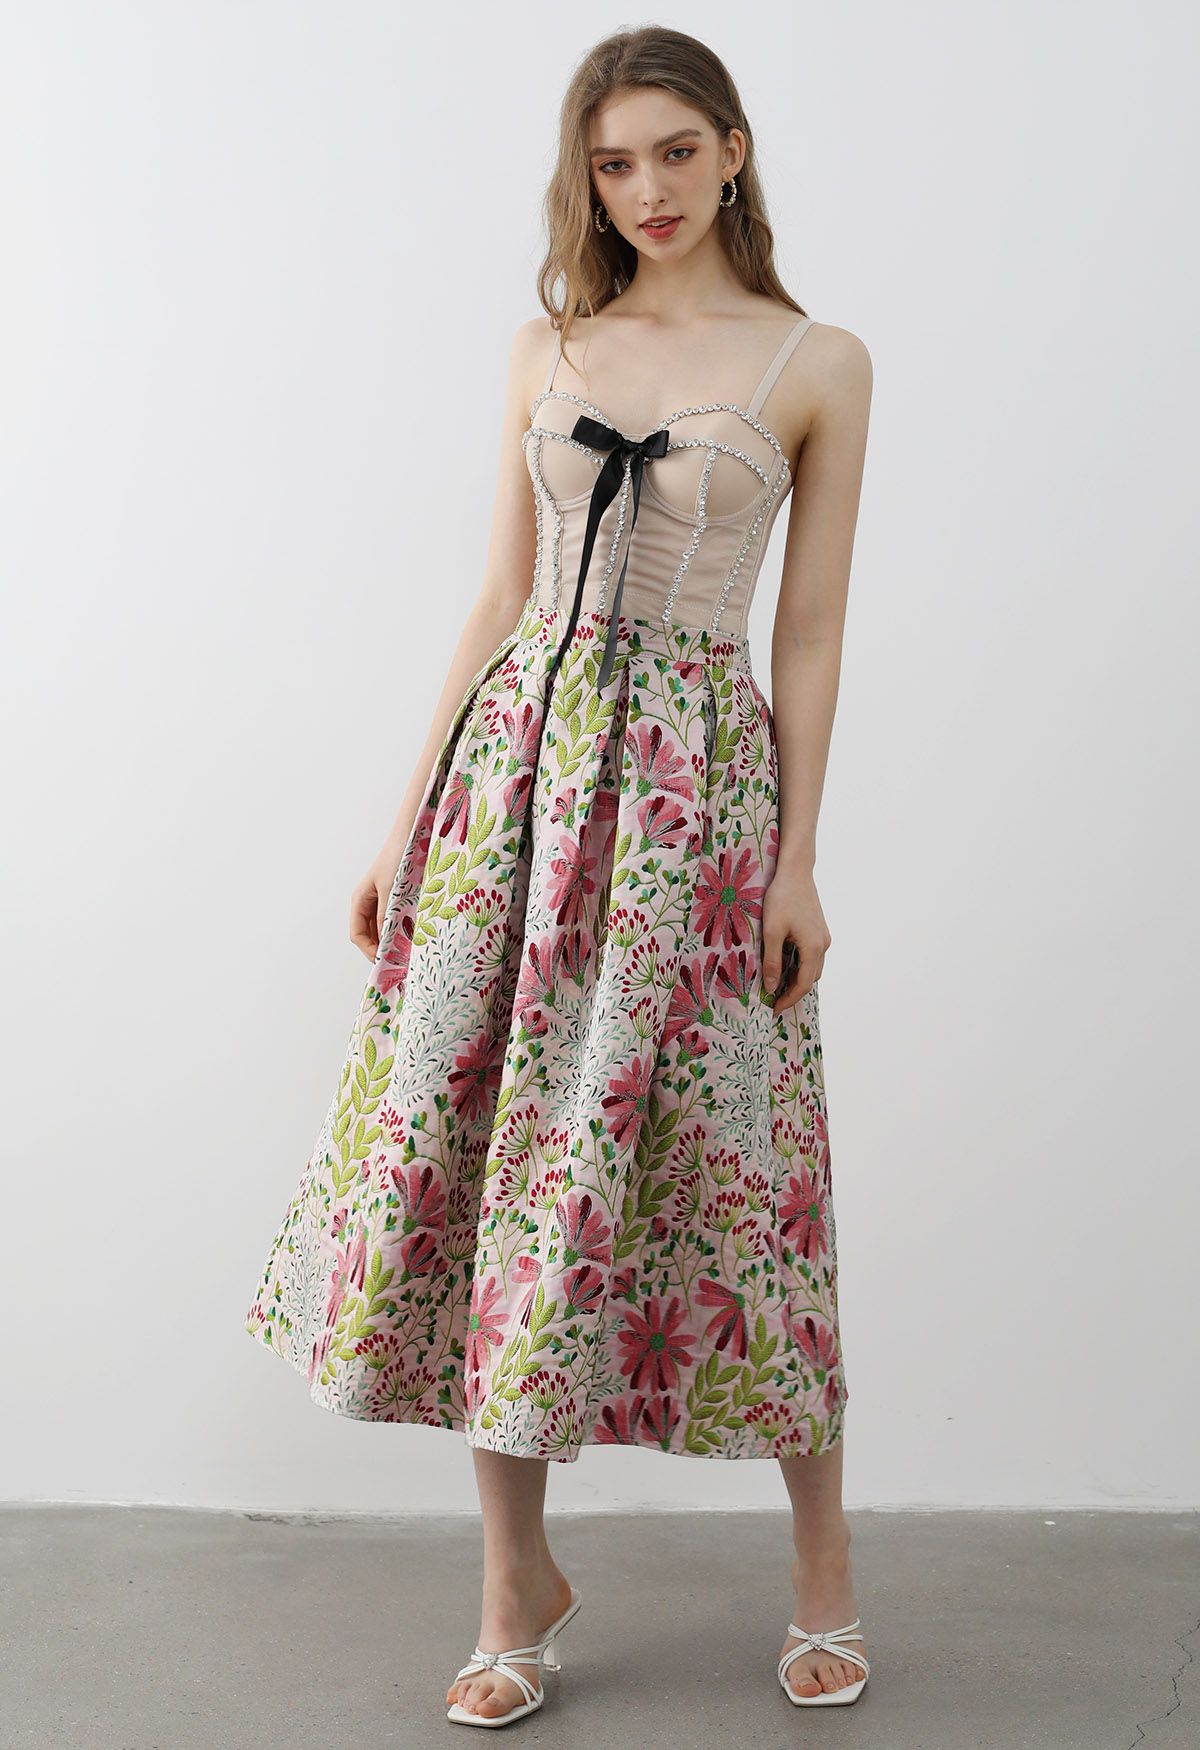 Falda midi plisada de jacquard con diseño de margaritas alegres